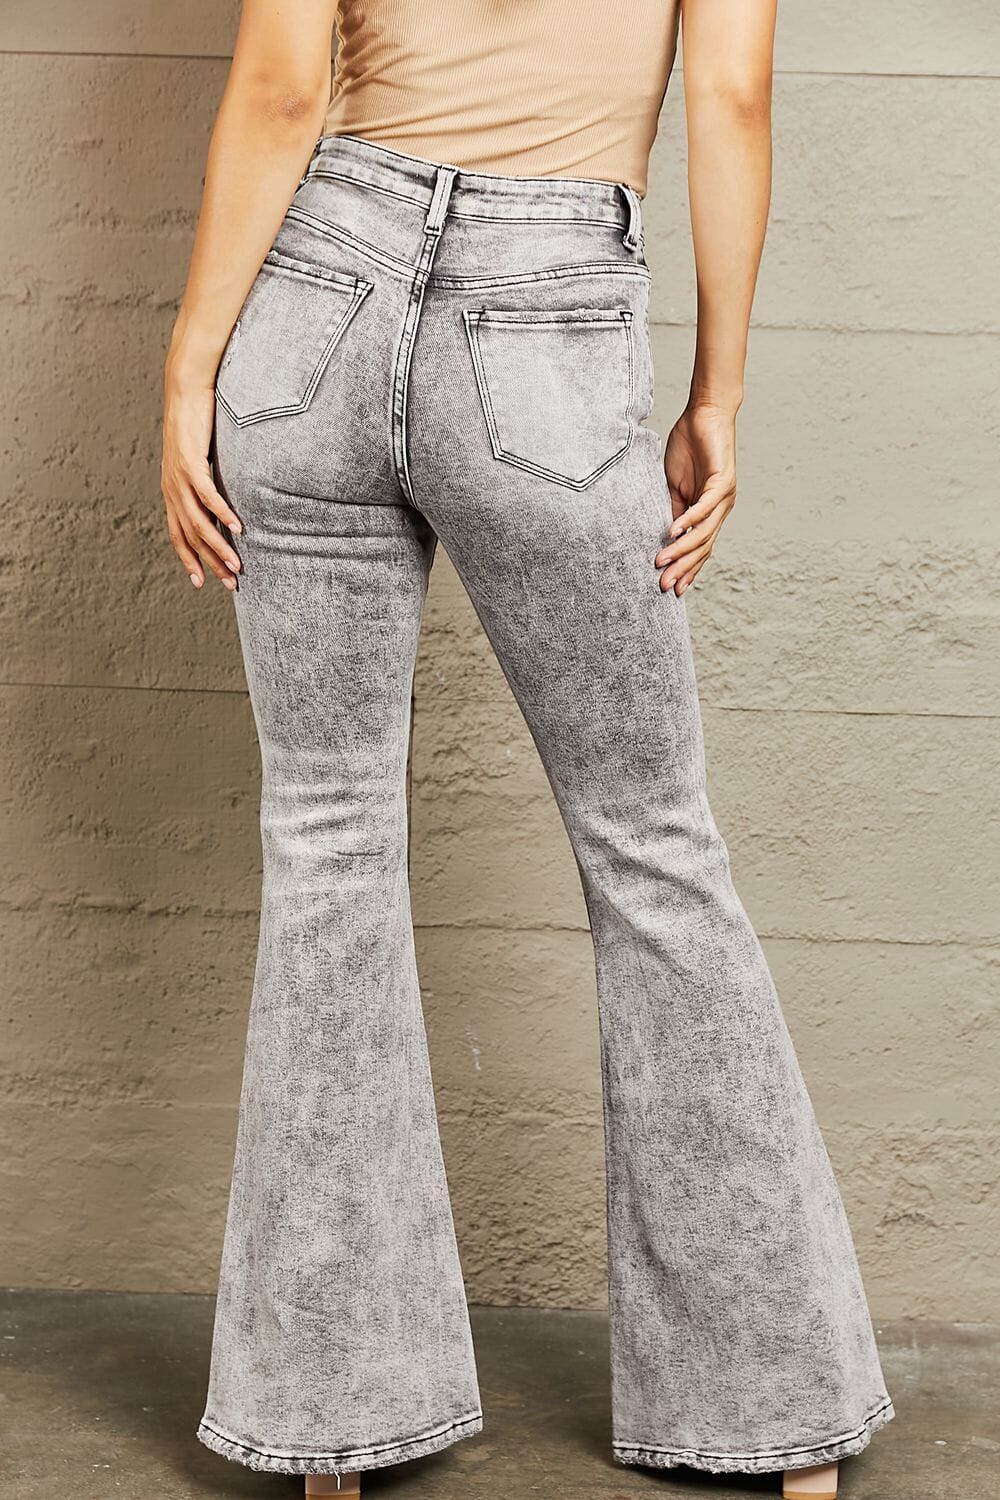 BAYEAS Charcoal Grey High Waisted Acid Wash Flare Jeans jeans jehouze 